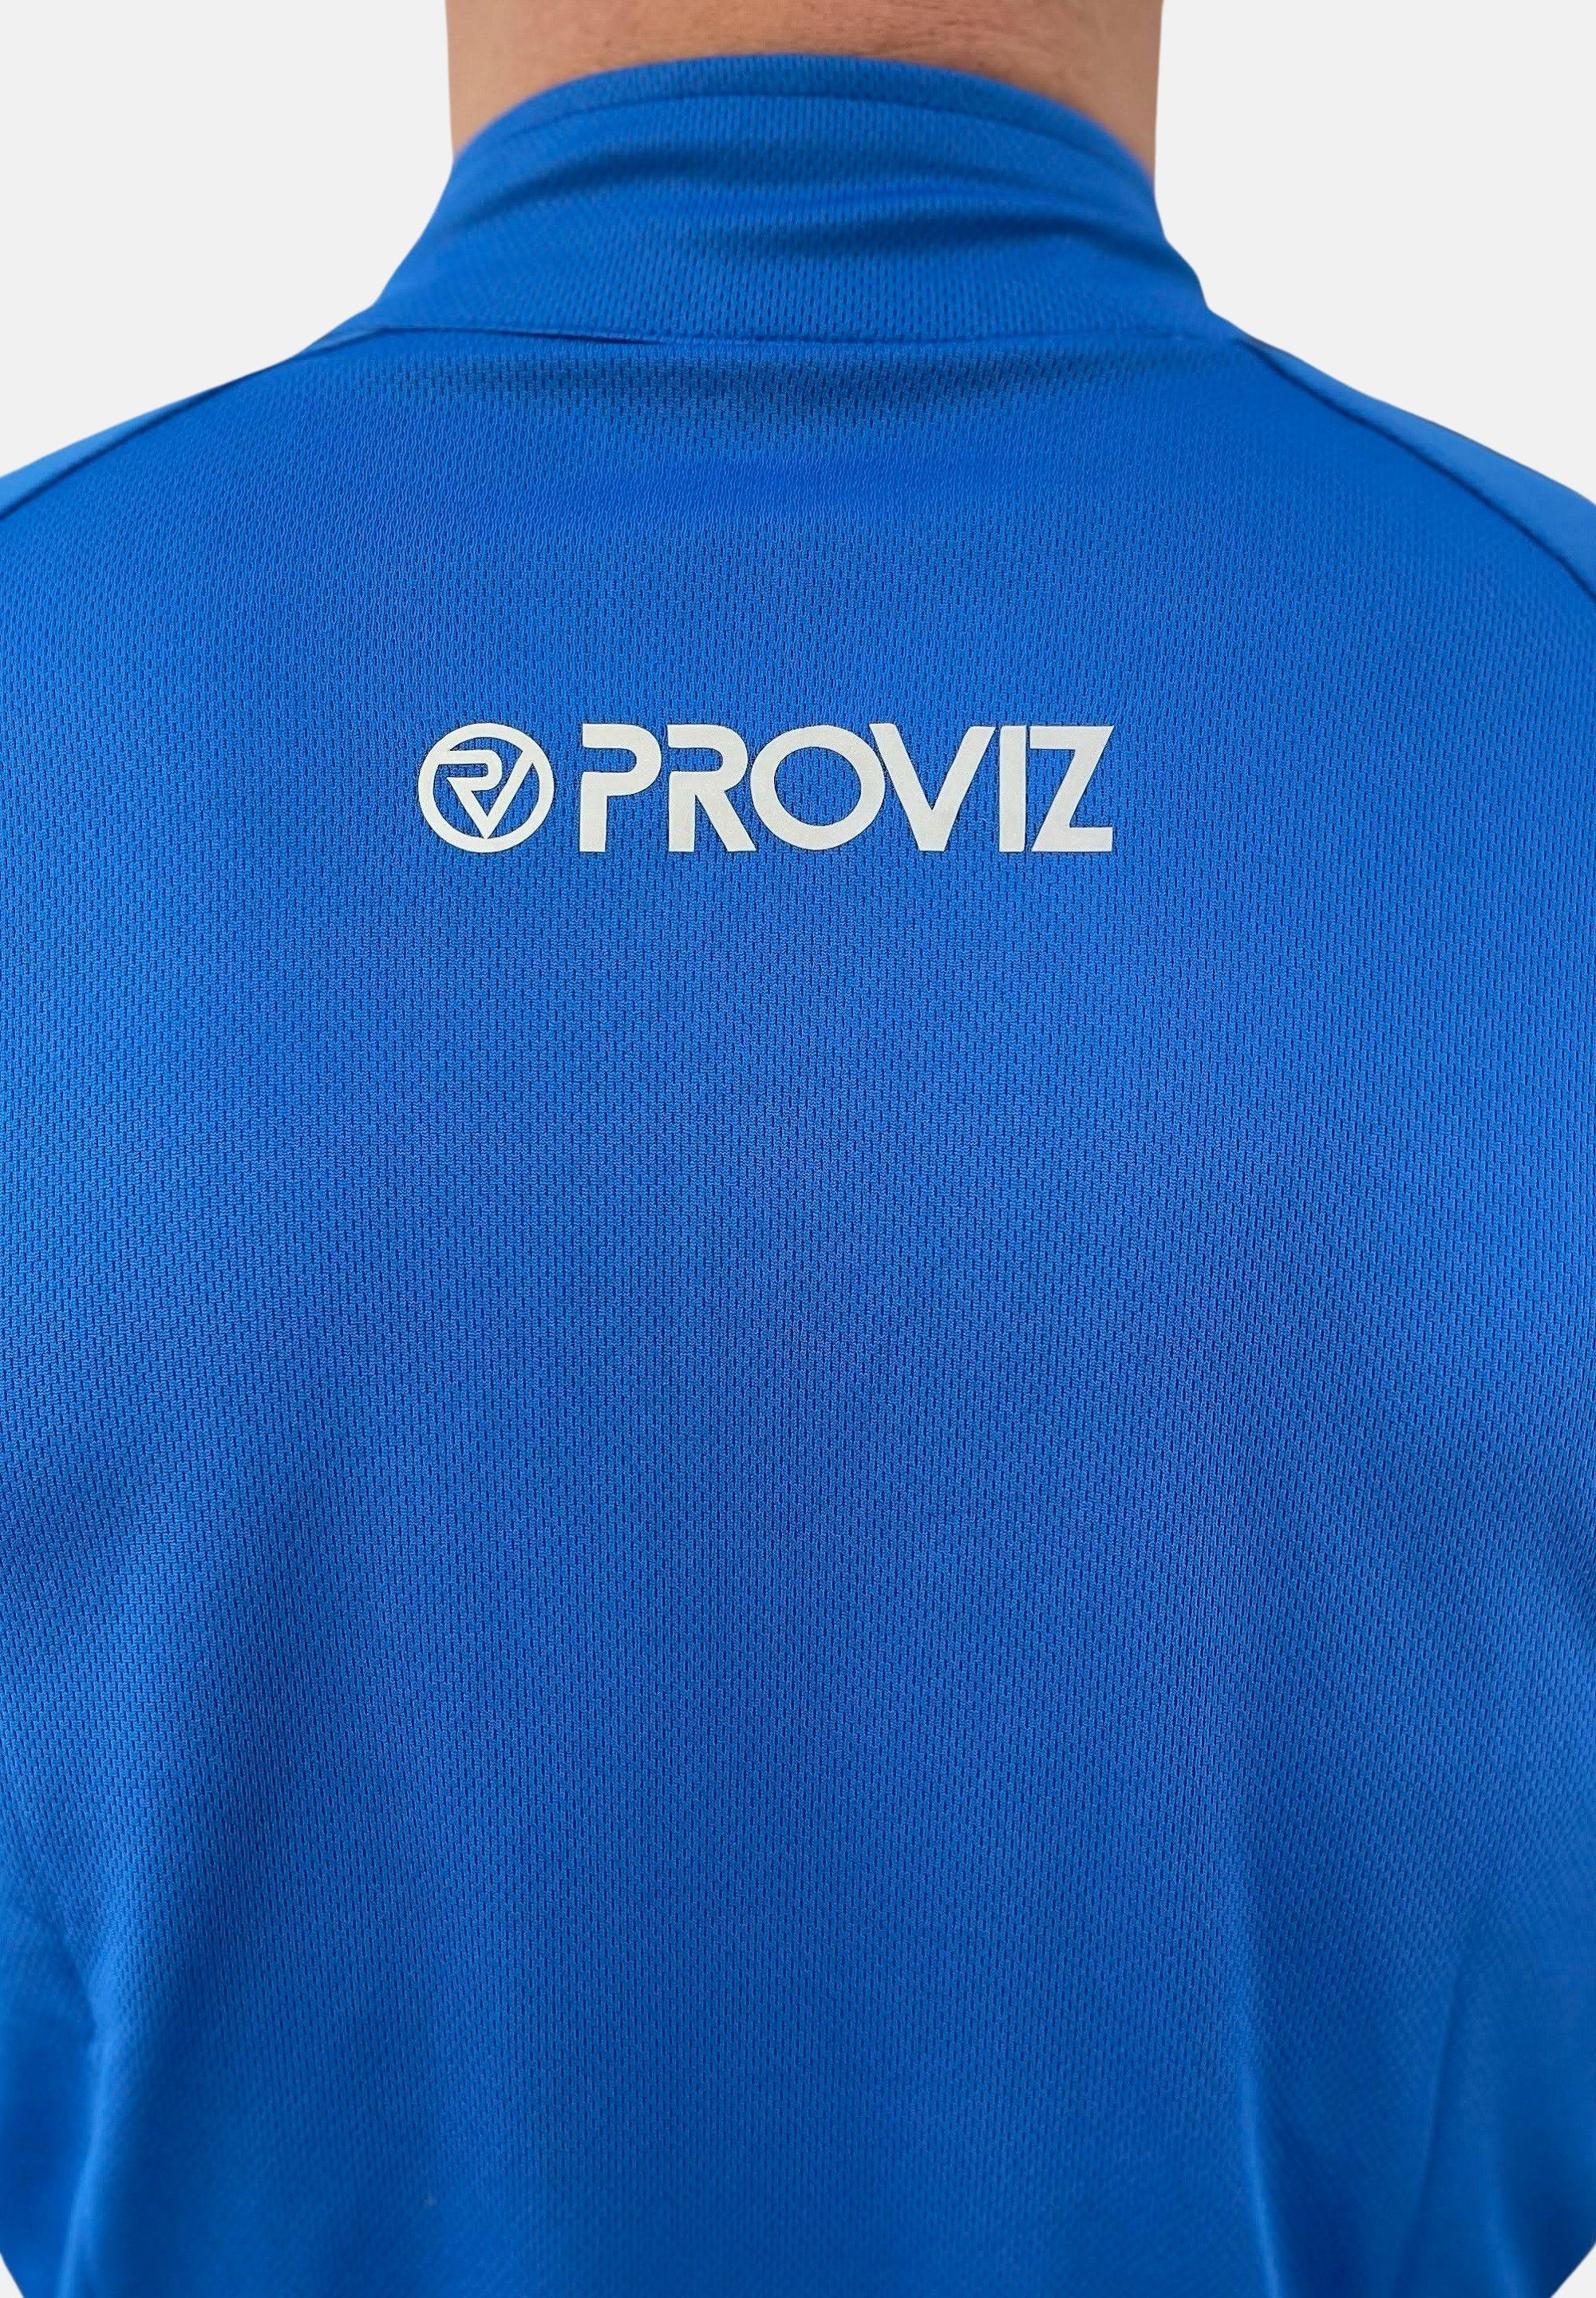 ProViz Laufshirt Ultraleicht, blue feuchtigkeitsabsorbierend, reflektierend Klassisch